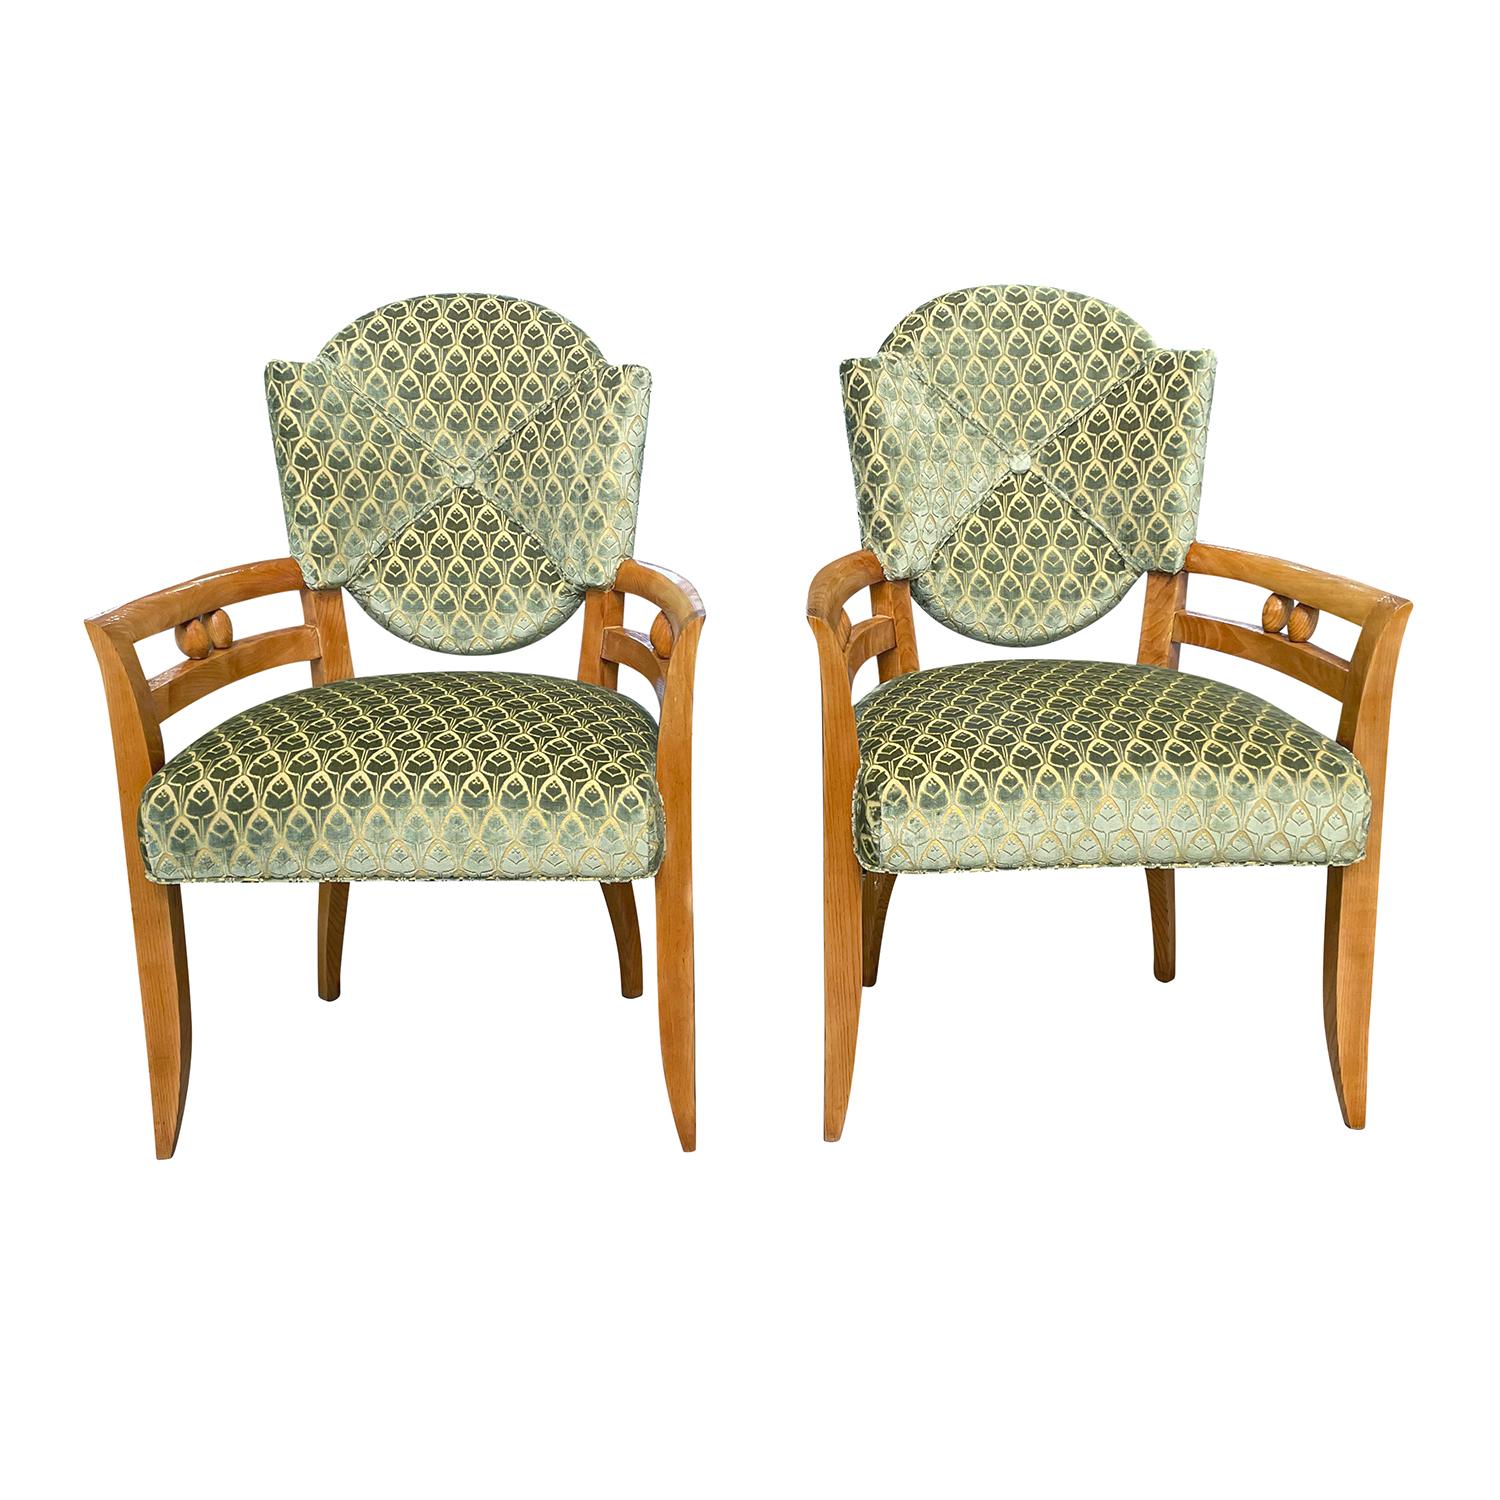 Ein französisches Vintage Art Deco Sesselpaar aus handgefertigtem, schellackpoliertem Eichenholz, entworfen und hergestellt von André Arbus in gutem Zustand. Die detaillierten Esszimmerstühle haben eine leicht geneigte, gepolsterte Rückenlehne mit